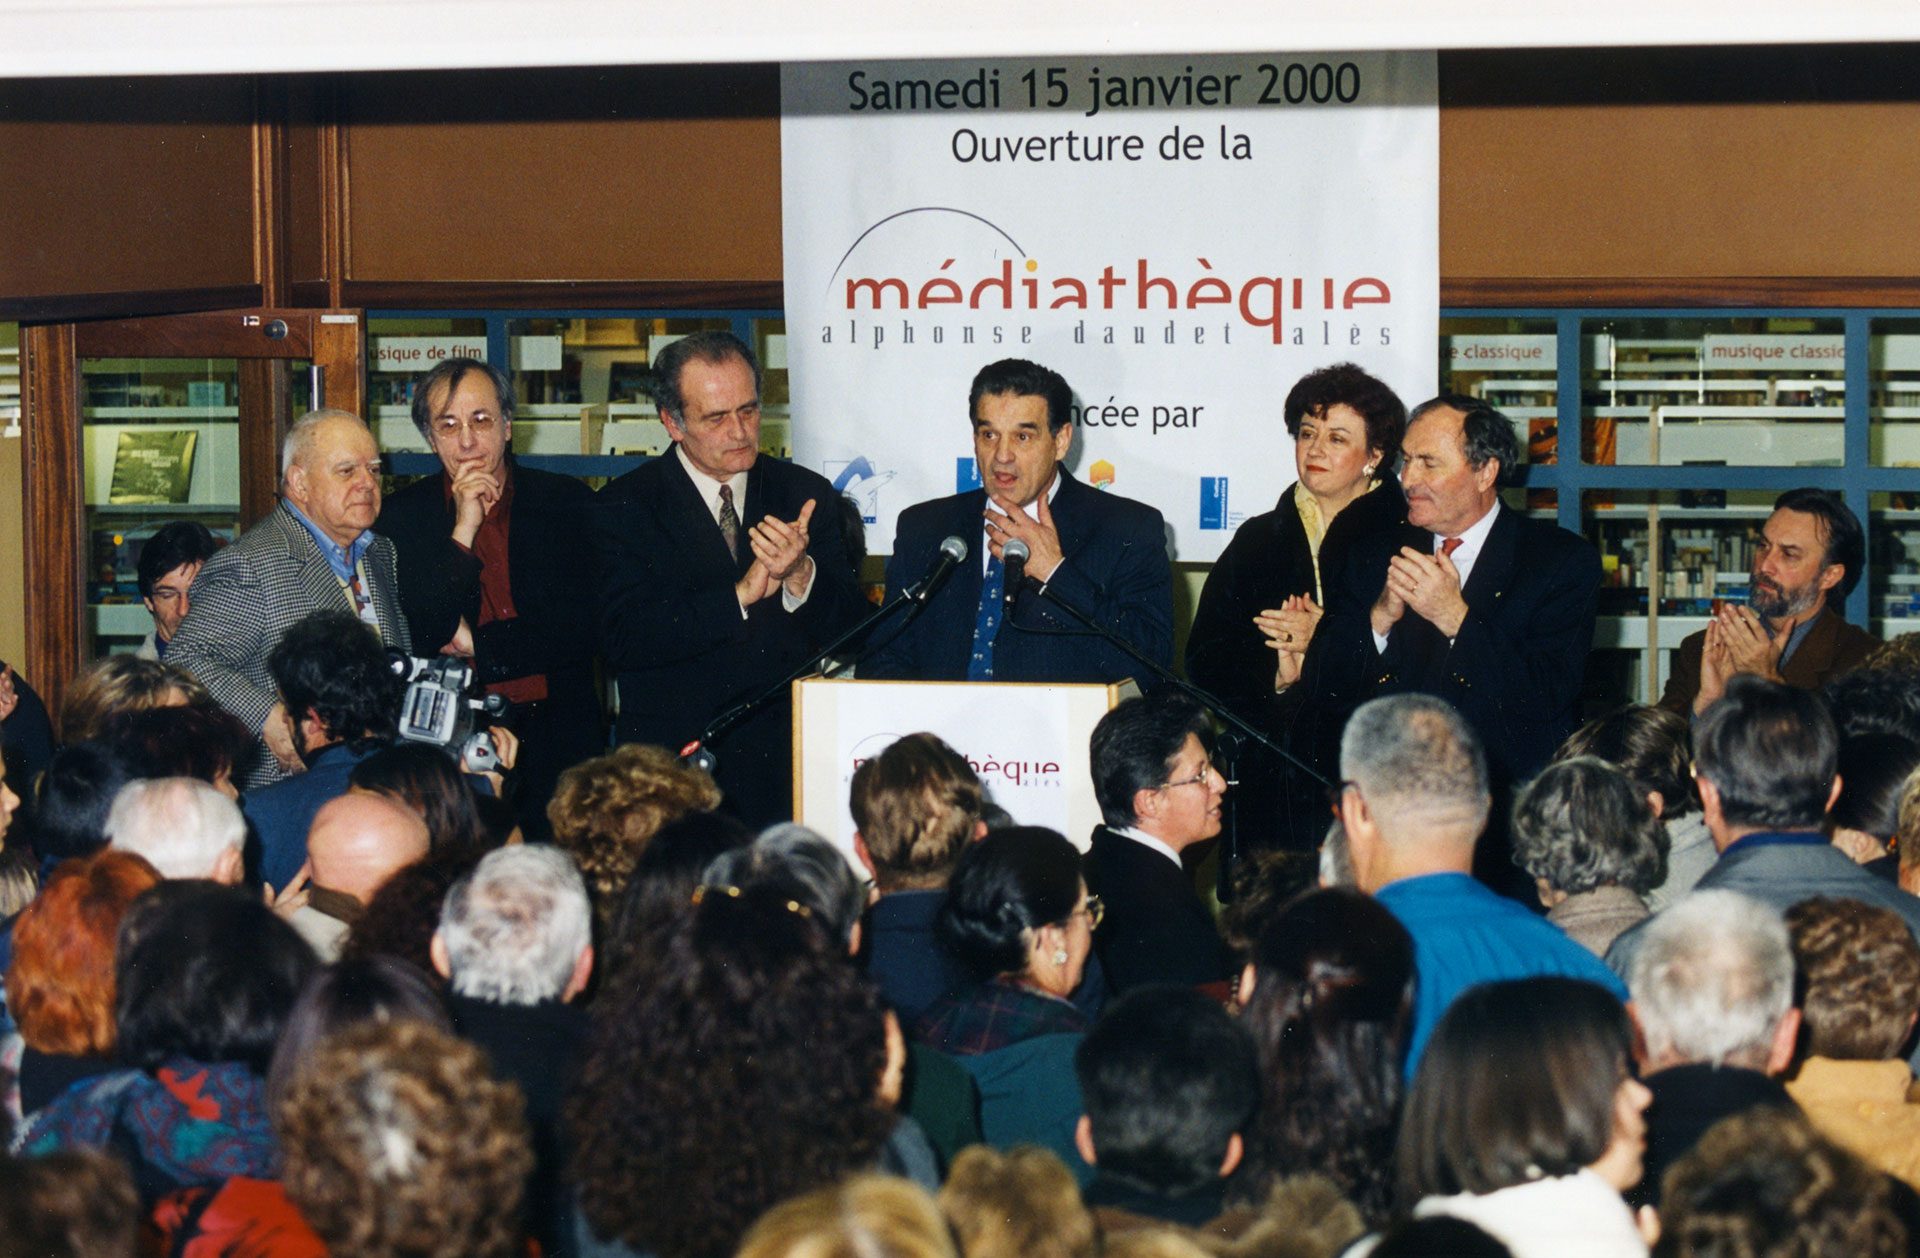 Fin 2019, Max Roustan inaugurera la fin des travaux, quasiment 20 ans jour pour jour après l’inauguration de la médiathèque Alphonse Daudet, le 15 janvier 2000.